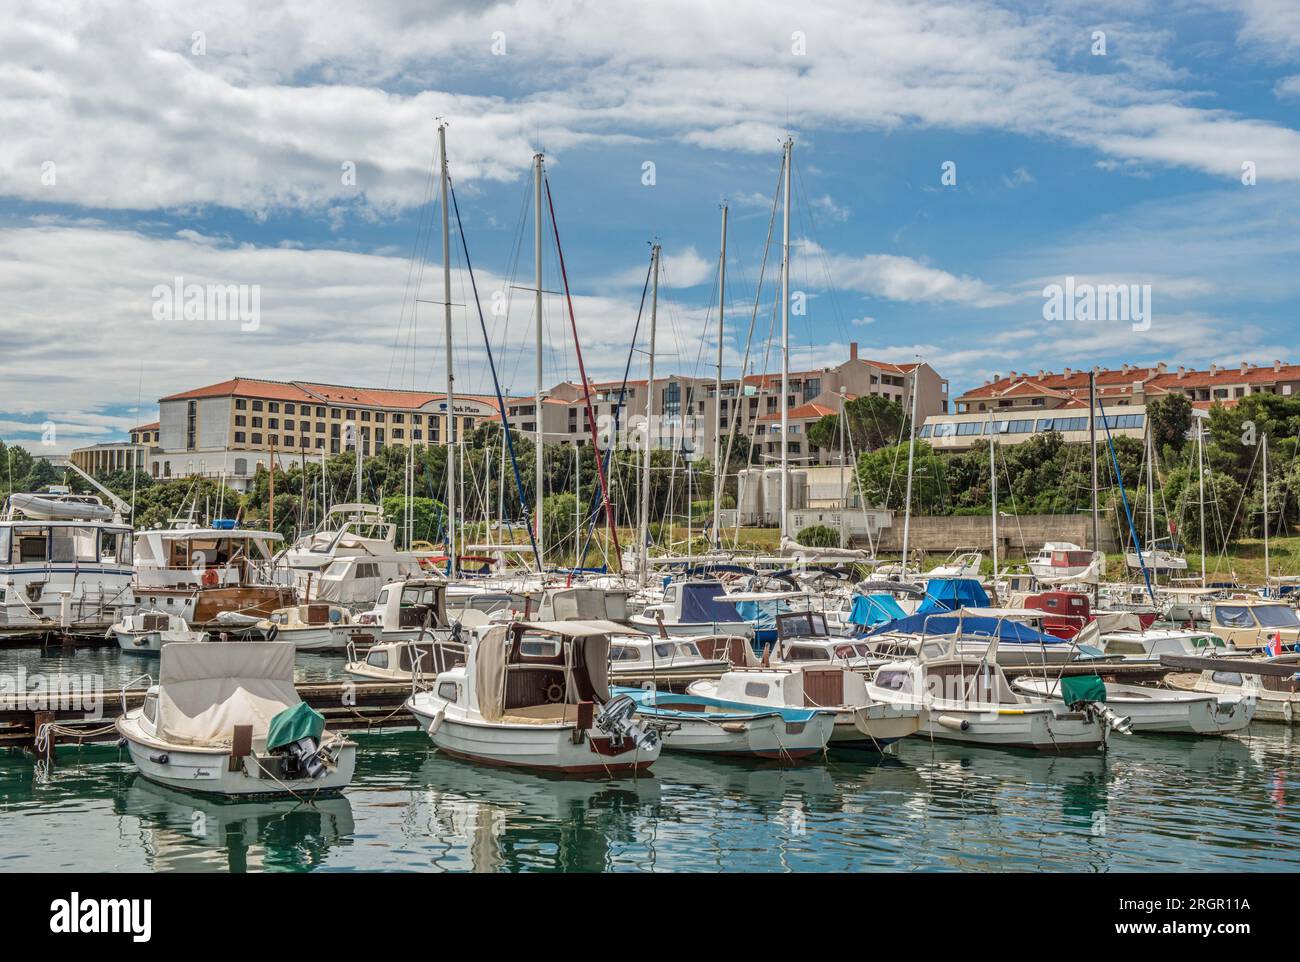 Park Plaza Veredula Peninsula Côte croate à l'heure d'été en juin avec de nombreux bateaux et yachts amarrés Banque D'Images